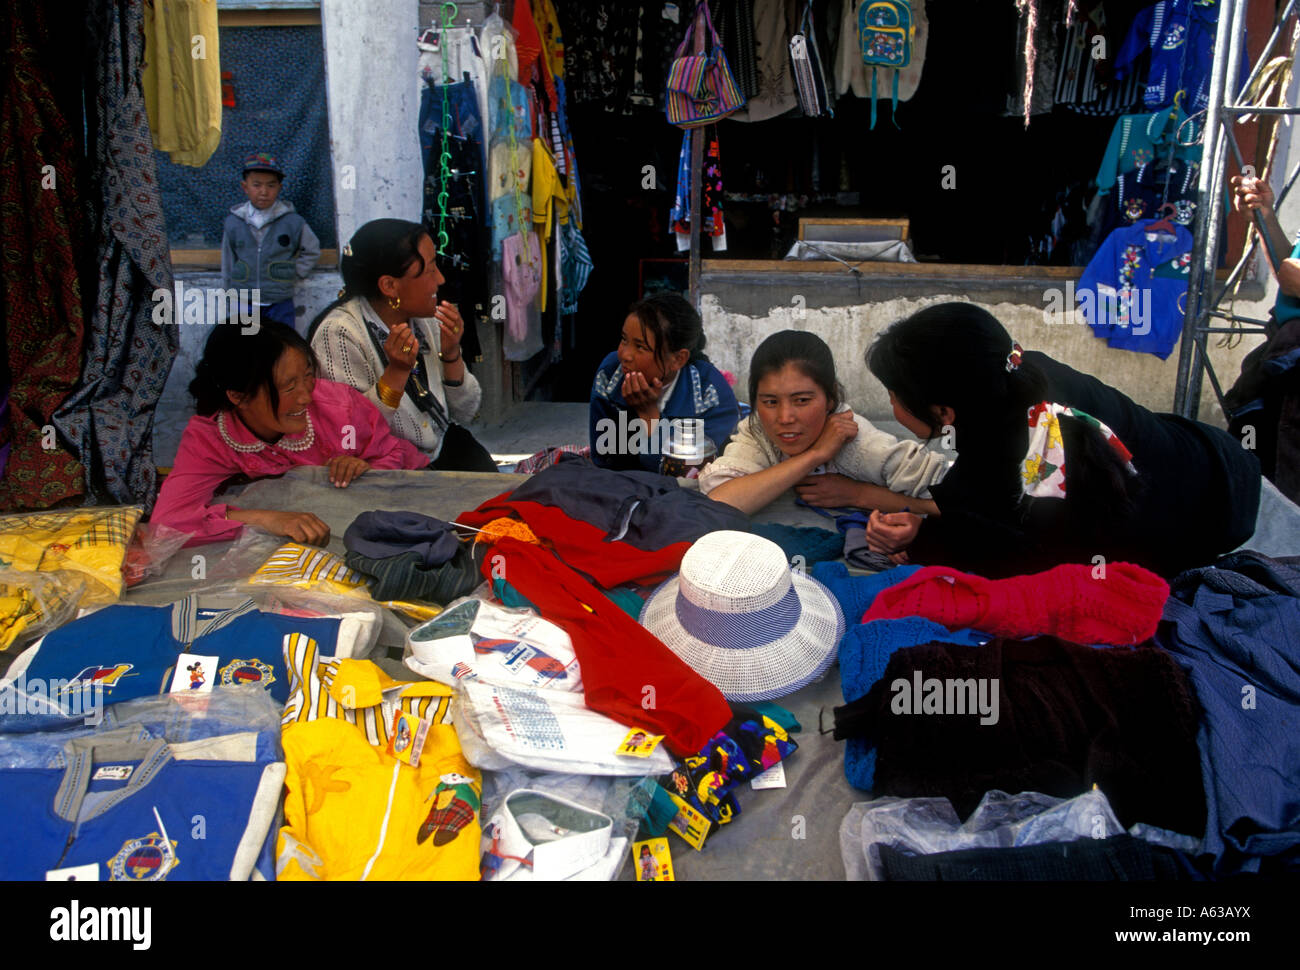 Las mujeres tibetanas, tibetana, las los proveedores, la venta de prendas vestir, ropa calada, el mercado al aire libre, Tsedang, el Tíbet, la Región del Tíbet, China, Asia Fotografía